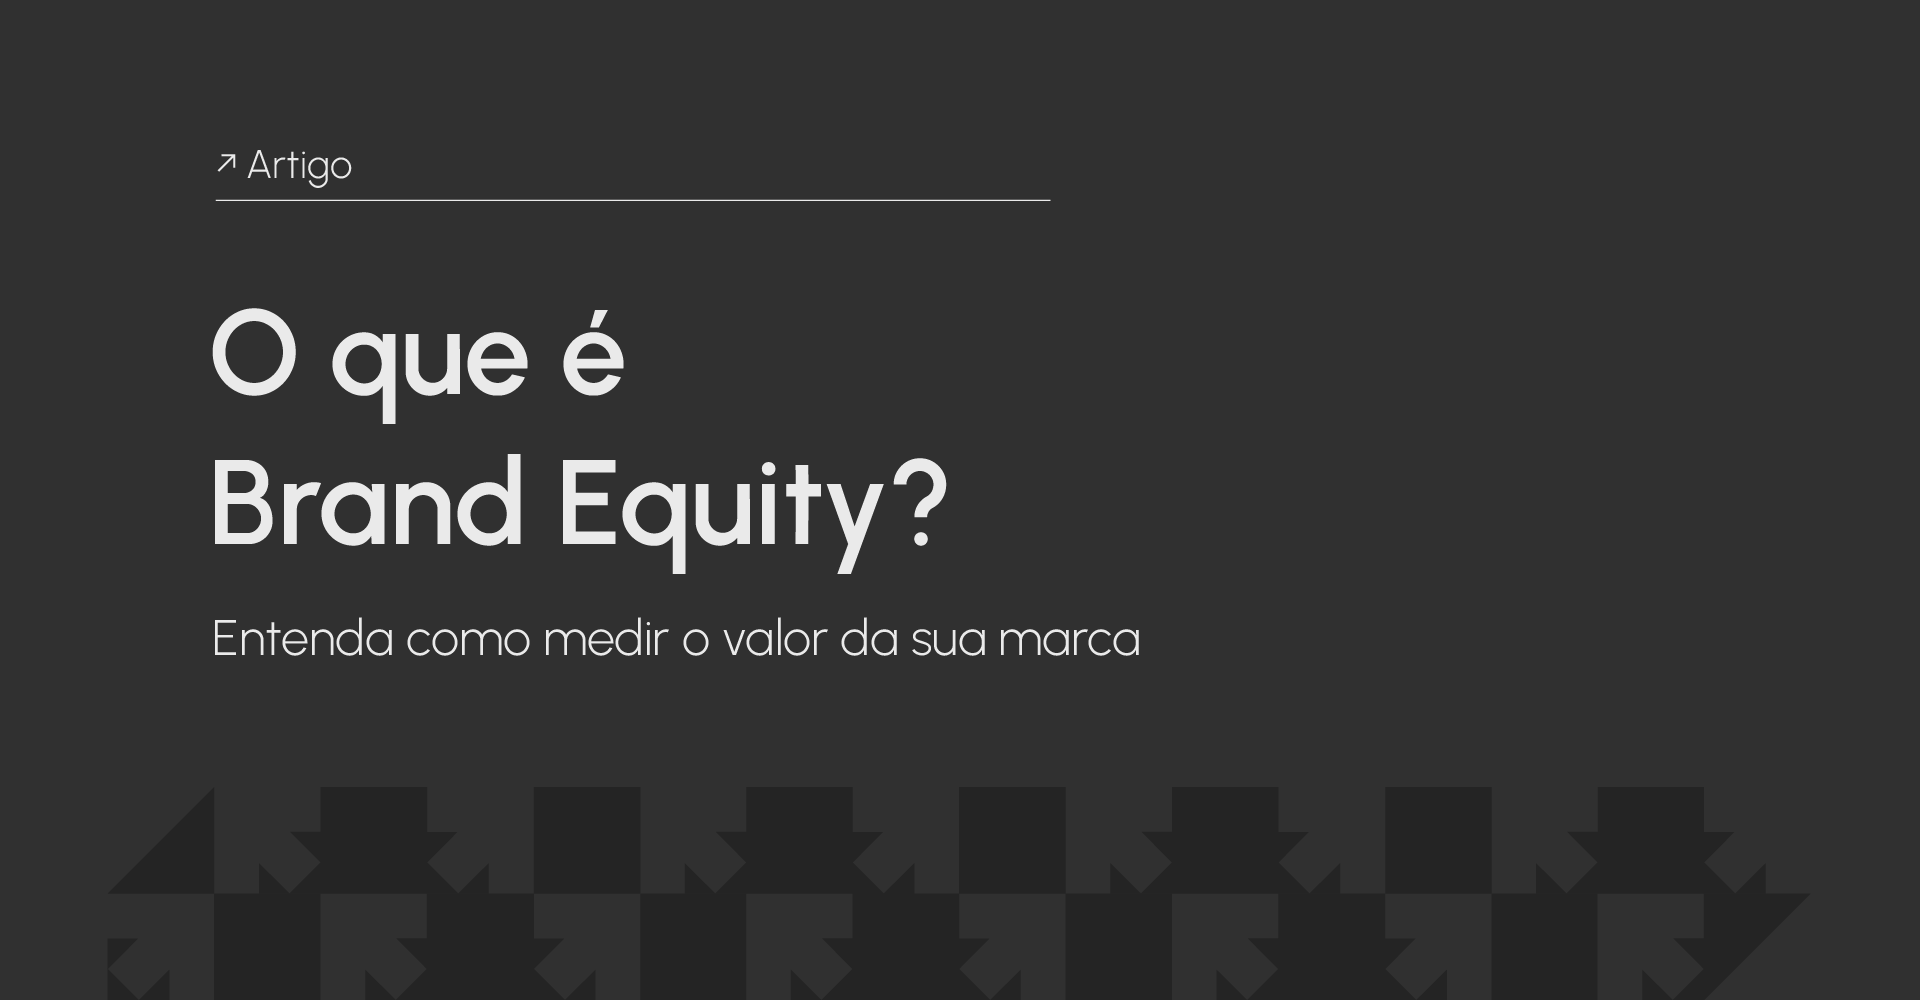 O que é Brand Equity?